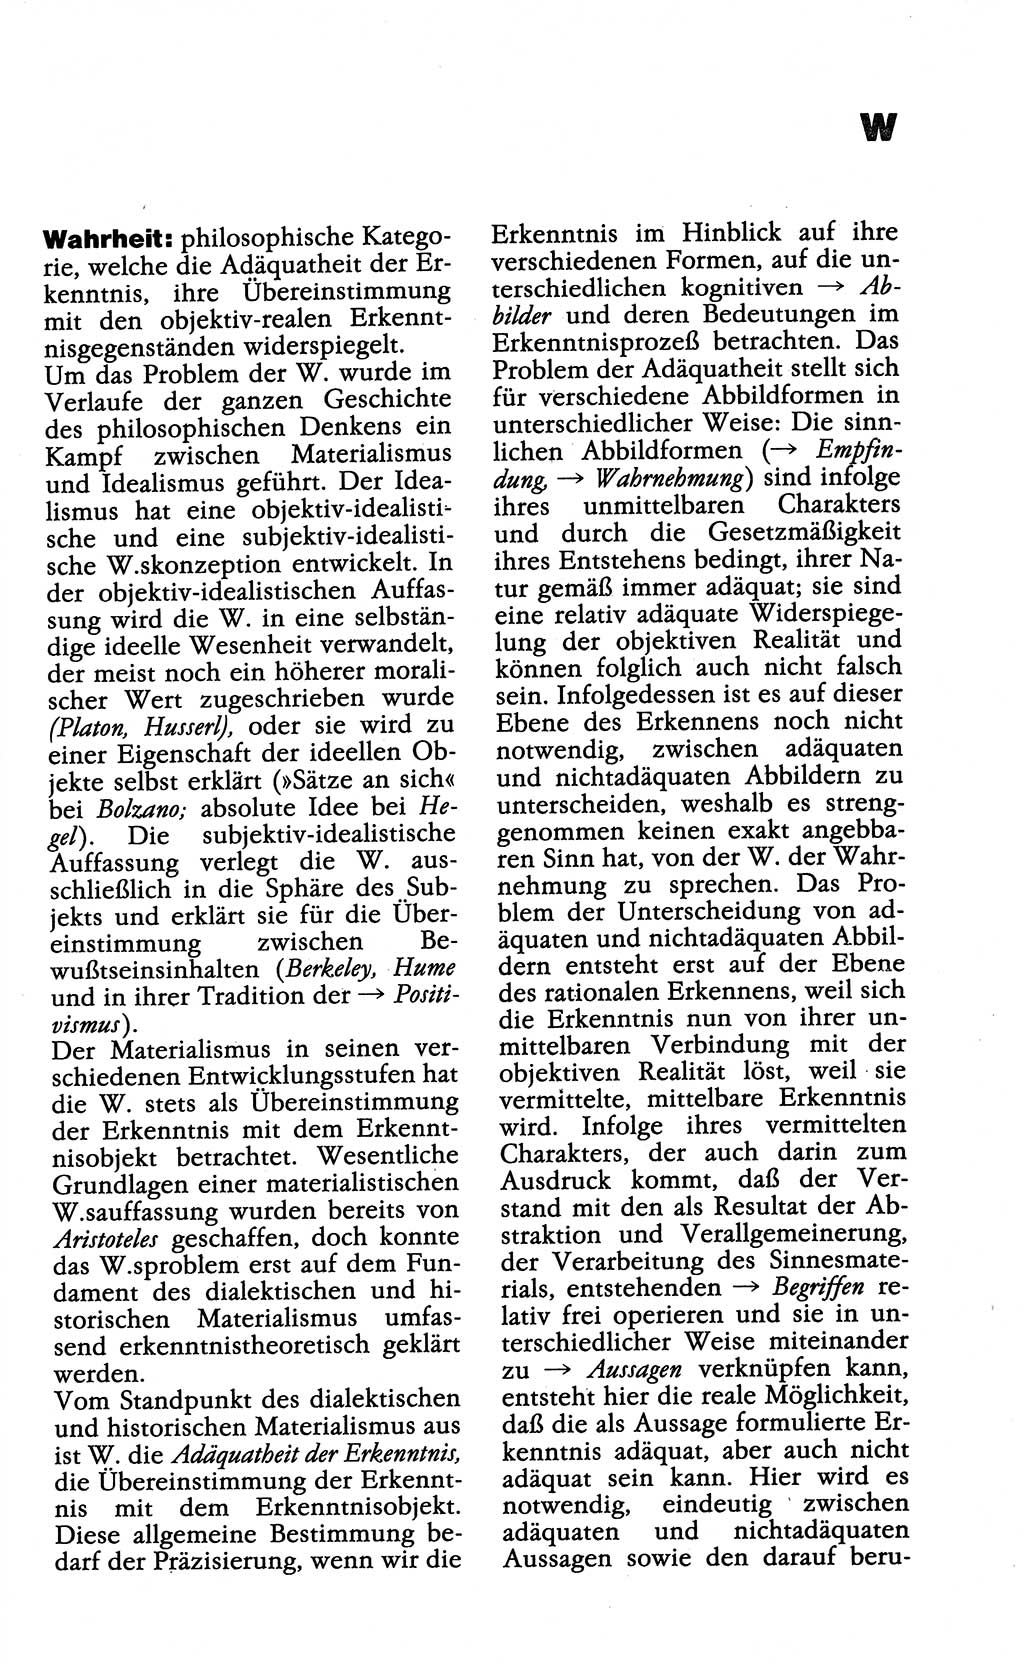 Wörterbuch der marxistisch-leninistischen Philosophie [Deutsche Demokratische Republik (DDR)] 1985, Seite 547 (Wb. ML Phil. DDR 1985, S. 547)